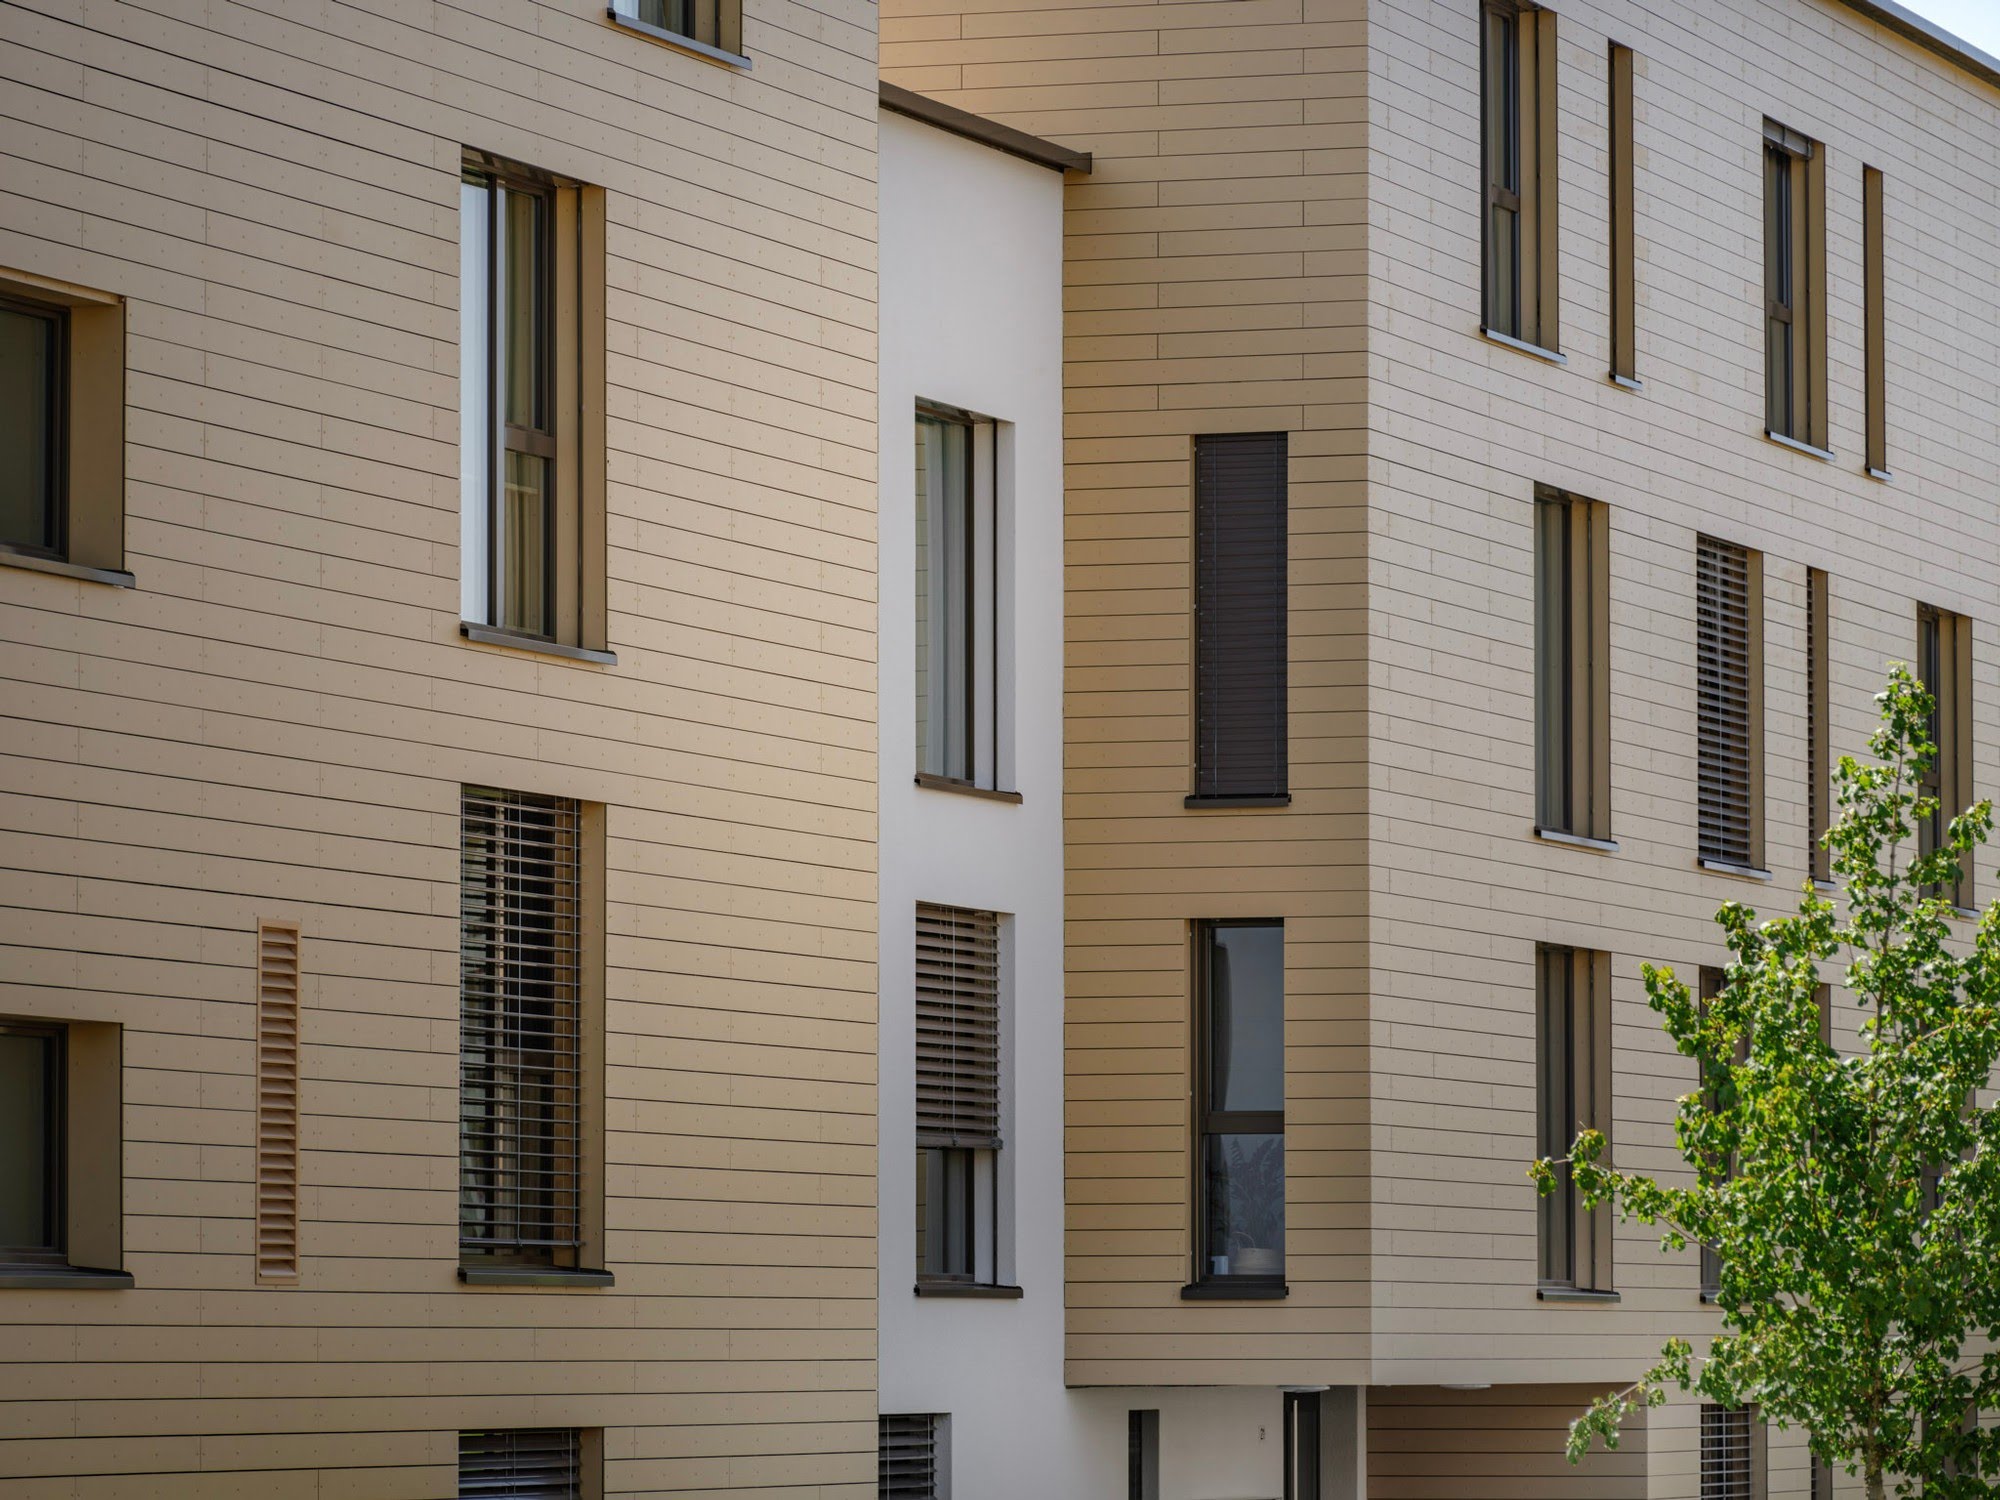 Wohnen MFH Wohnüberbauung Windbüelpark in Ruswil Architektur,Wohnungsbau,Wohnhäuser,Einfamilienhäuser,Mehrfamilienhäuser